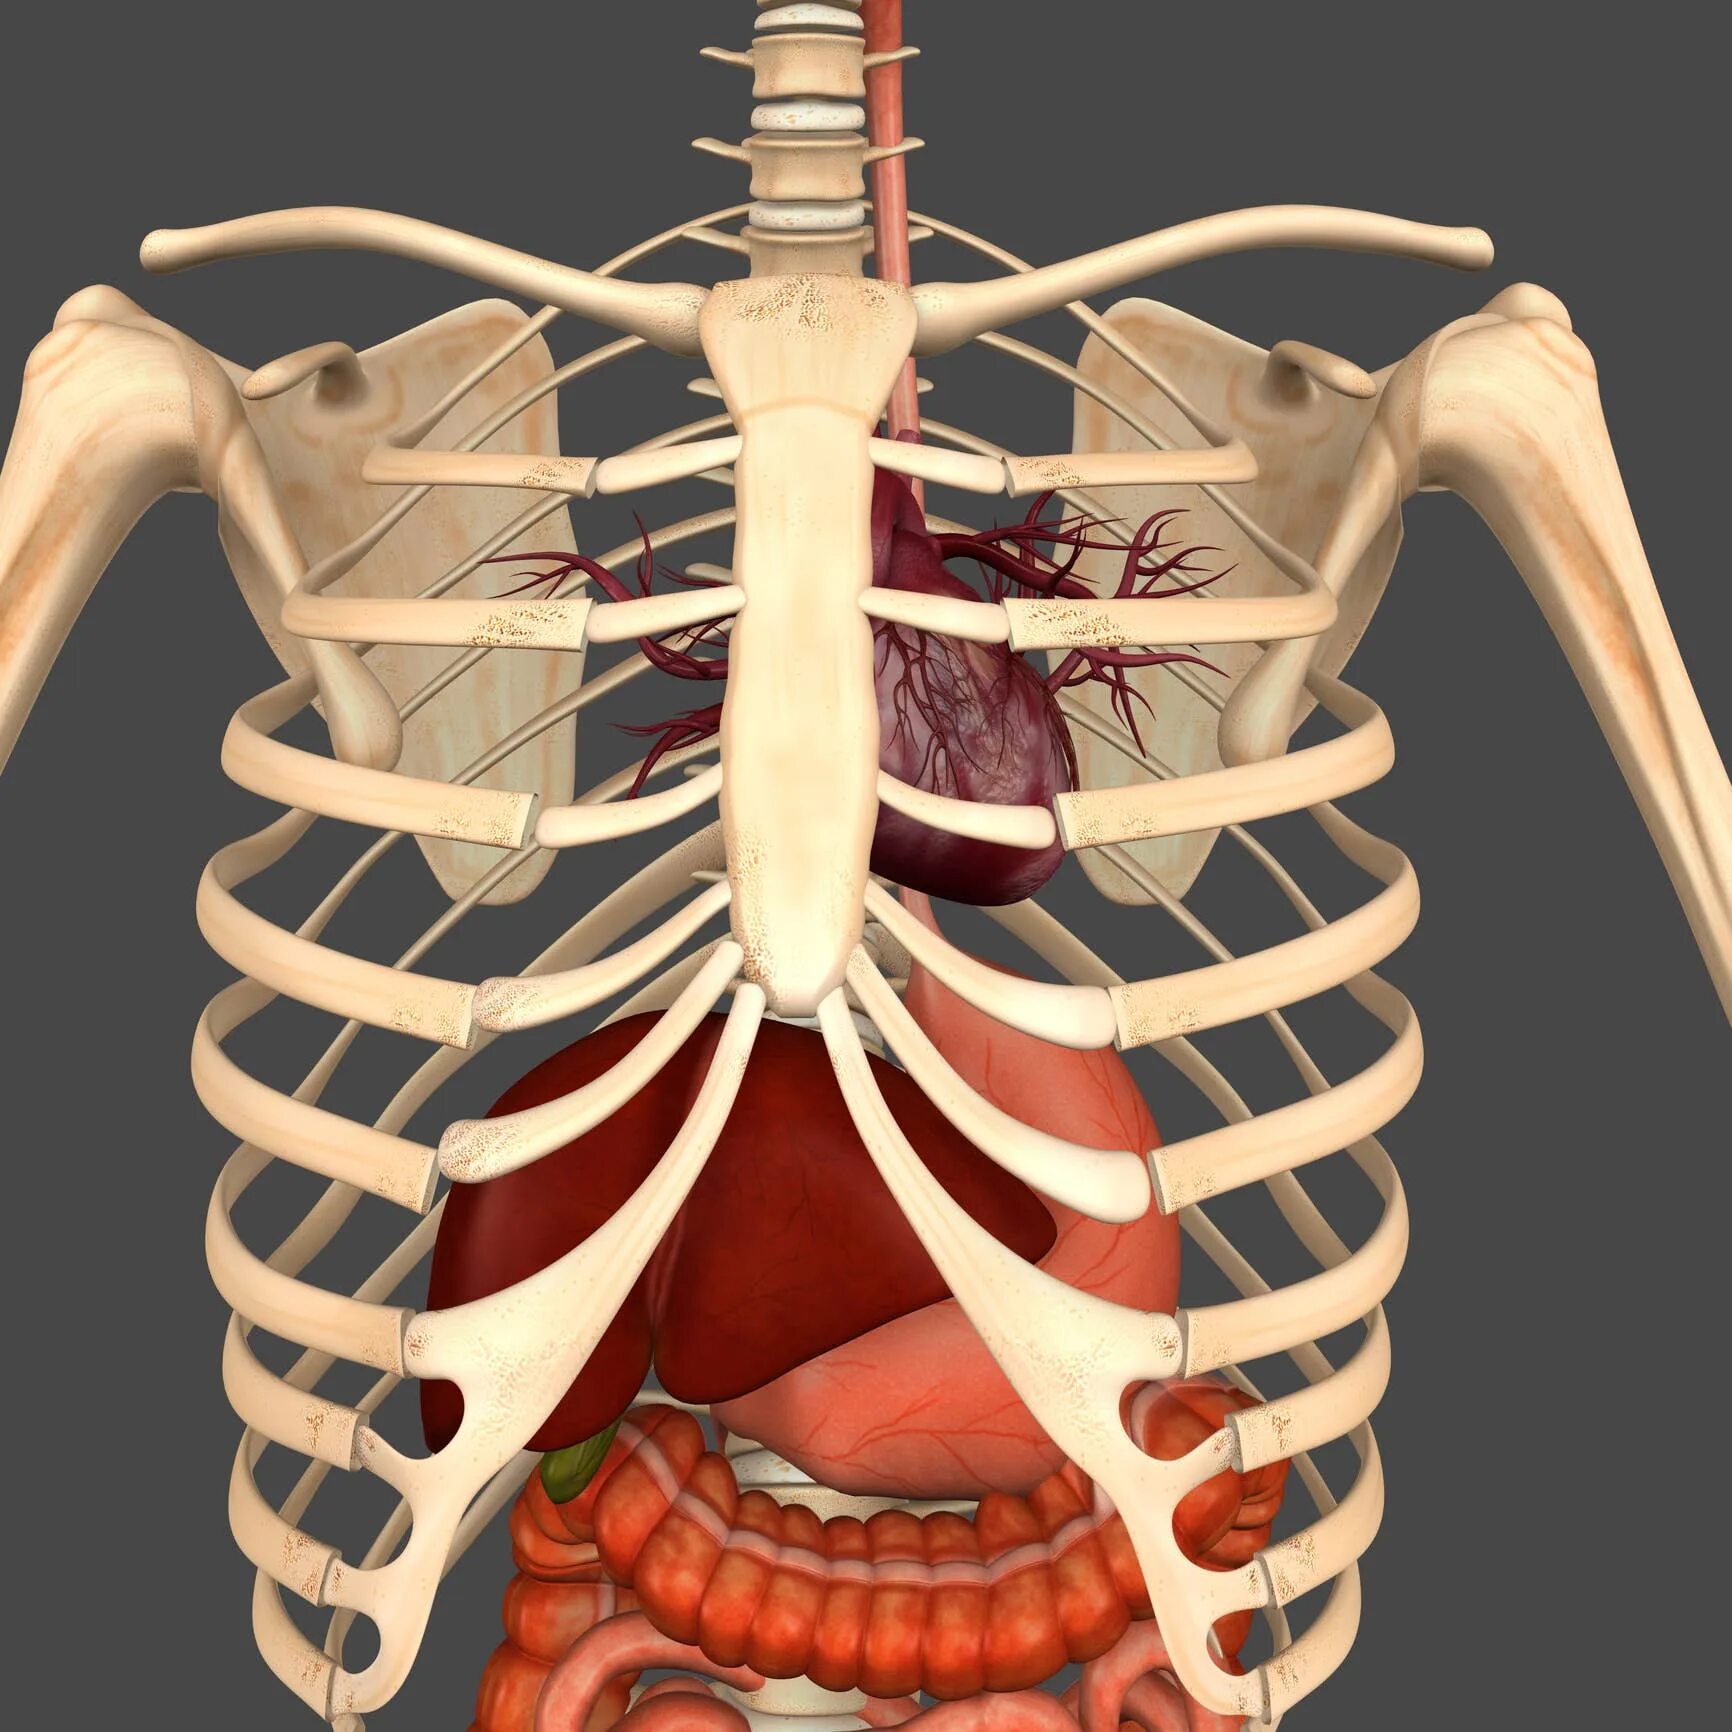 Органы человека с ребрами. Анатомия органов грудной клетки. Грудная клетка и внутренние органы анатомия. Человеческая грудная клетка с органами.